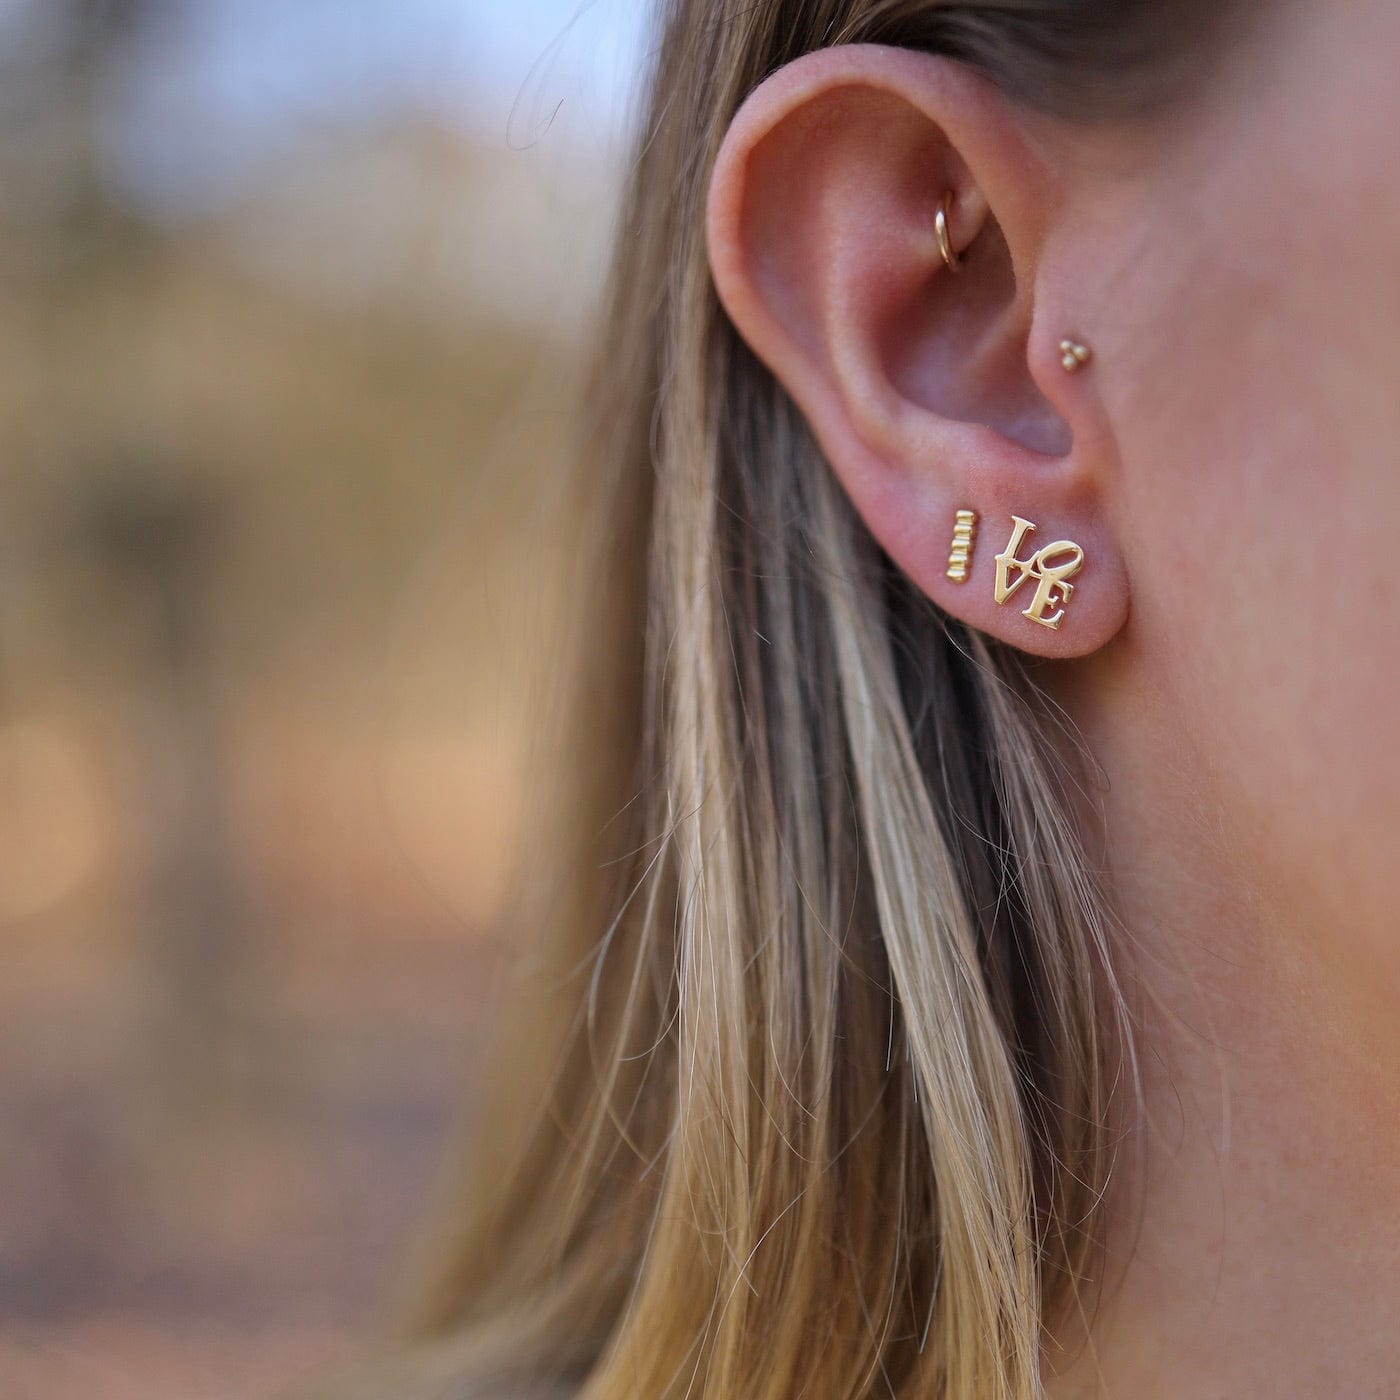 EAR-VRM Polished Gold Vermeil LOVE Stud Earrings